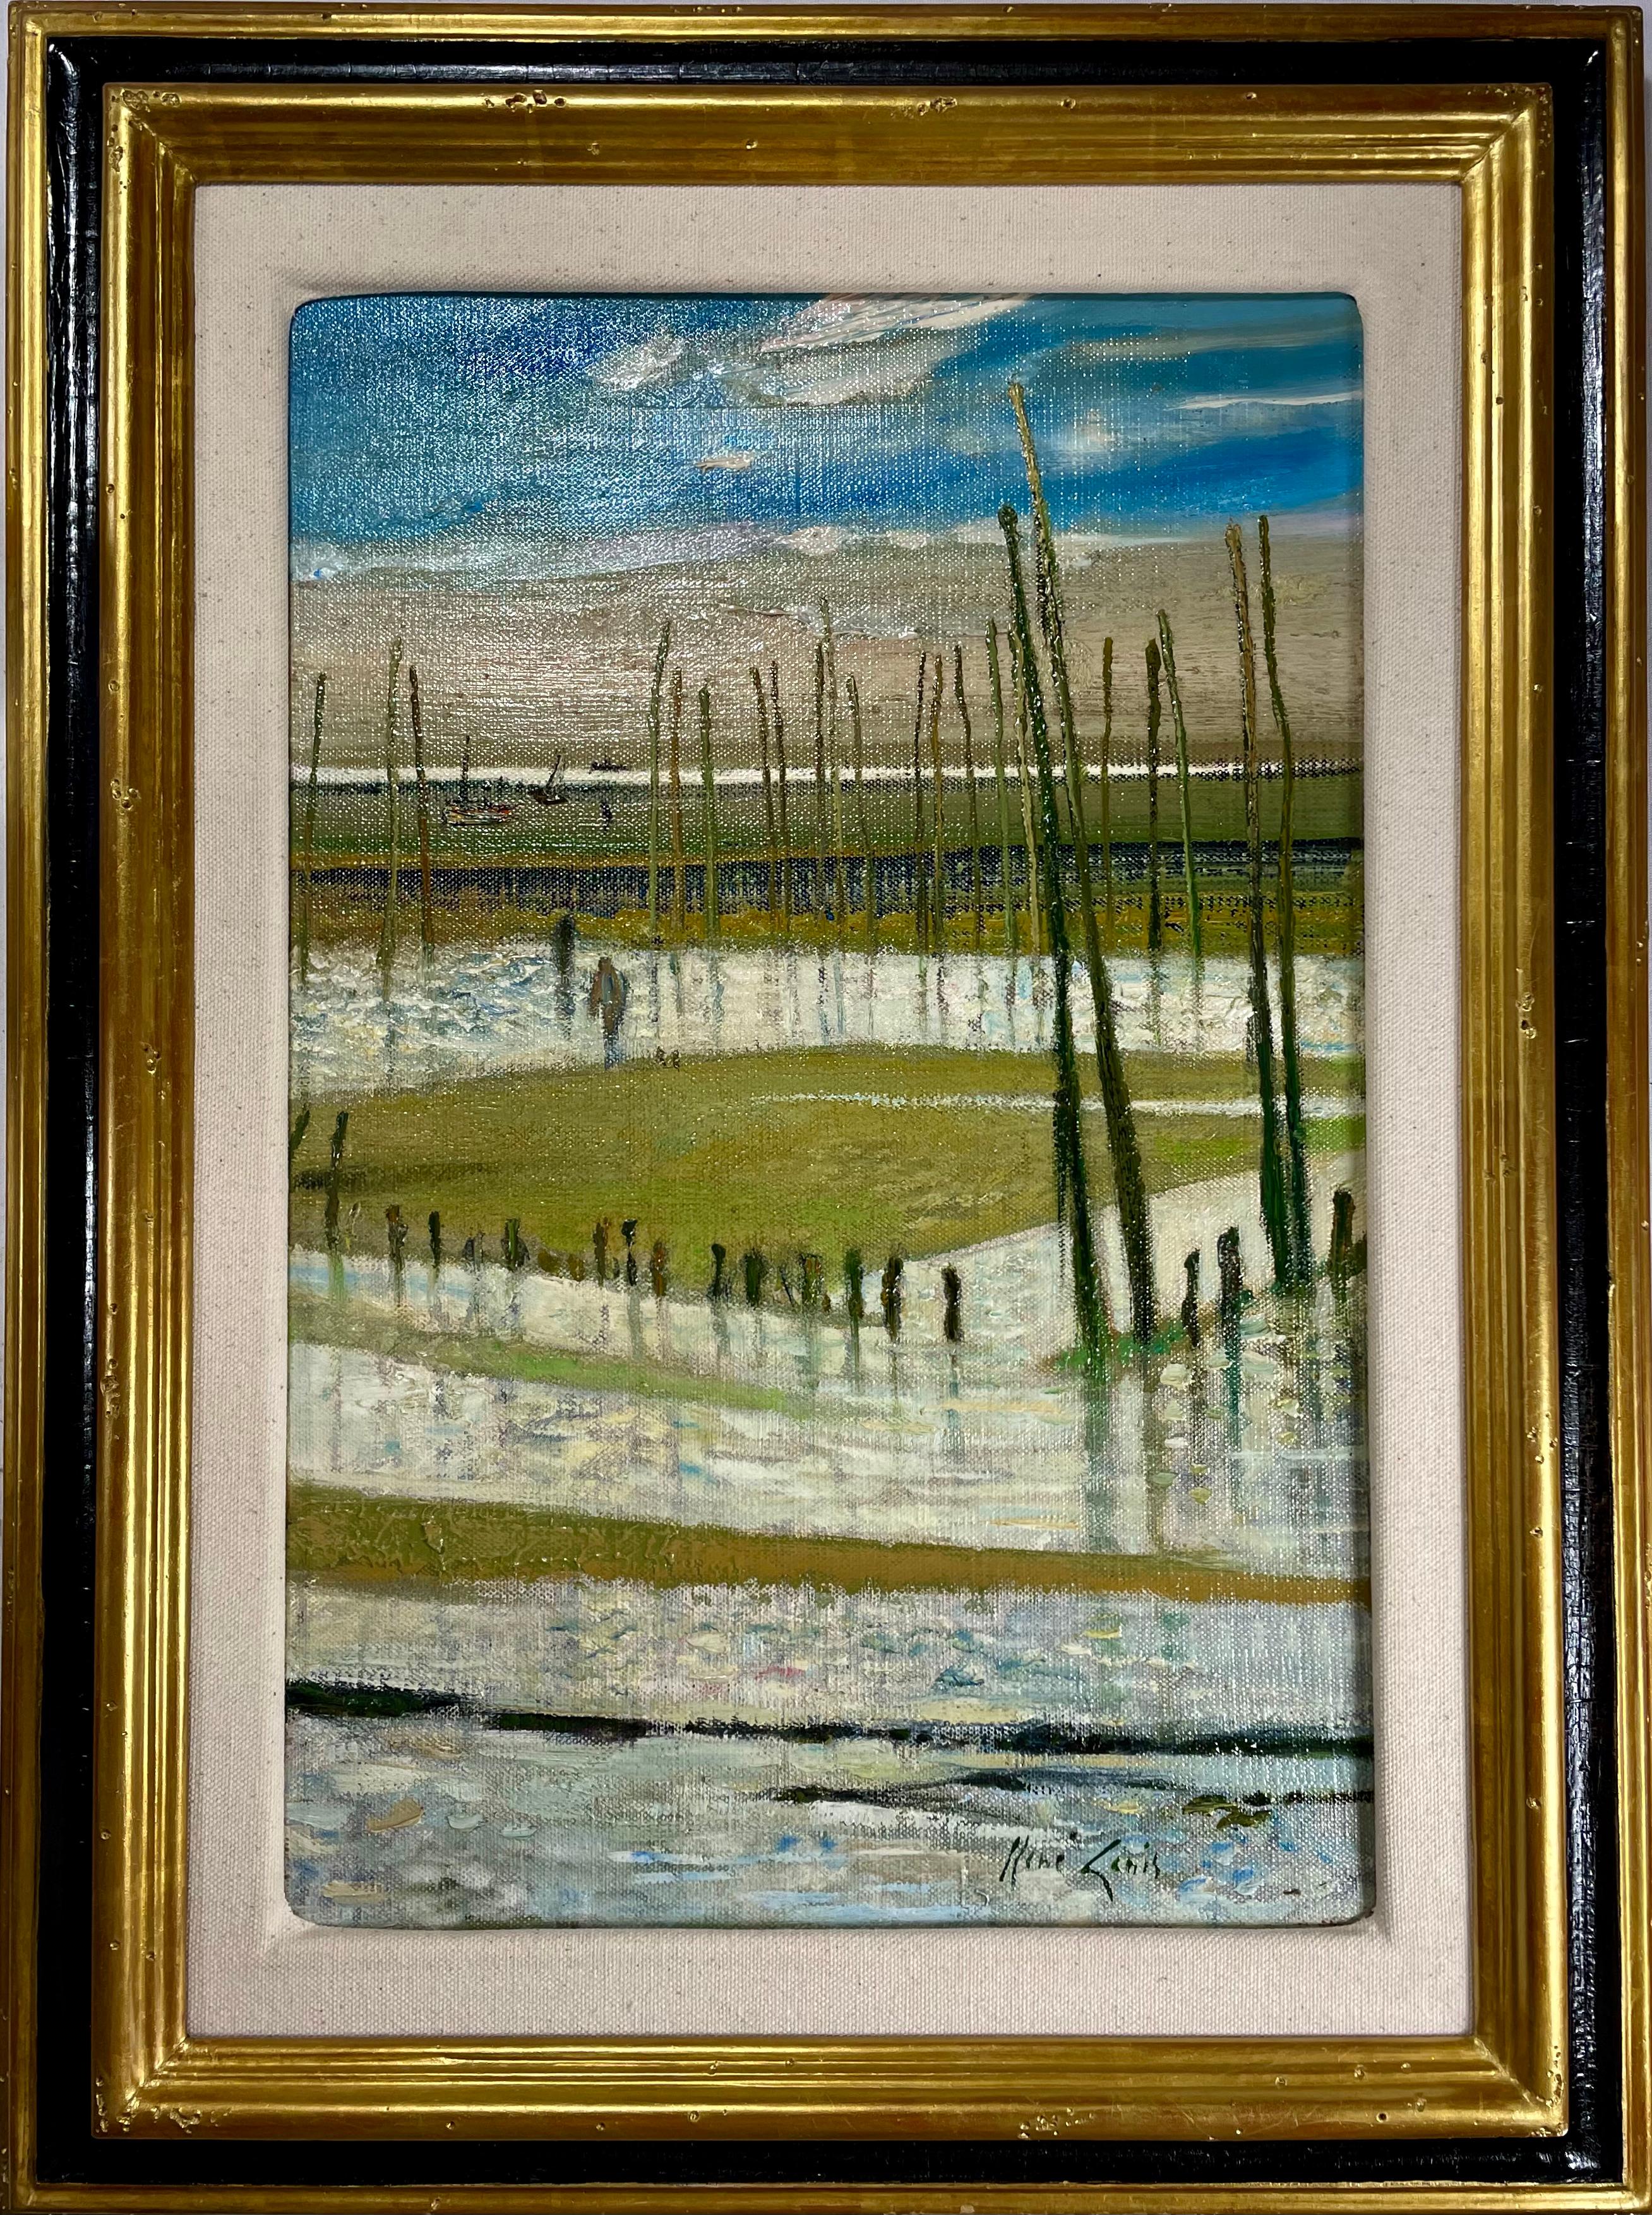 René Genis Landscape Painting - "Les Parcs" (Arcacheon Bay, France)